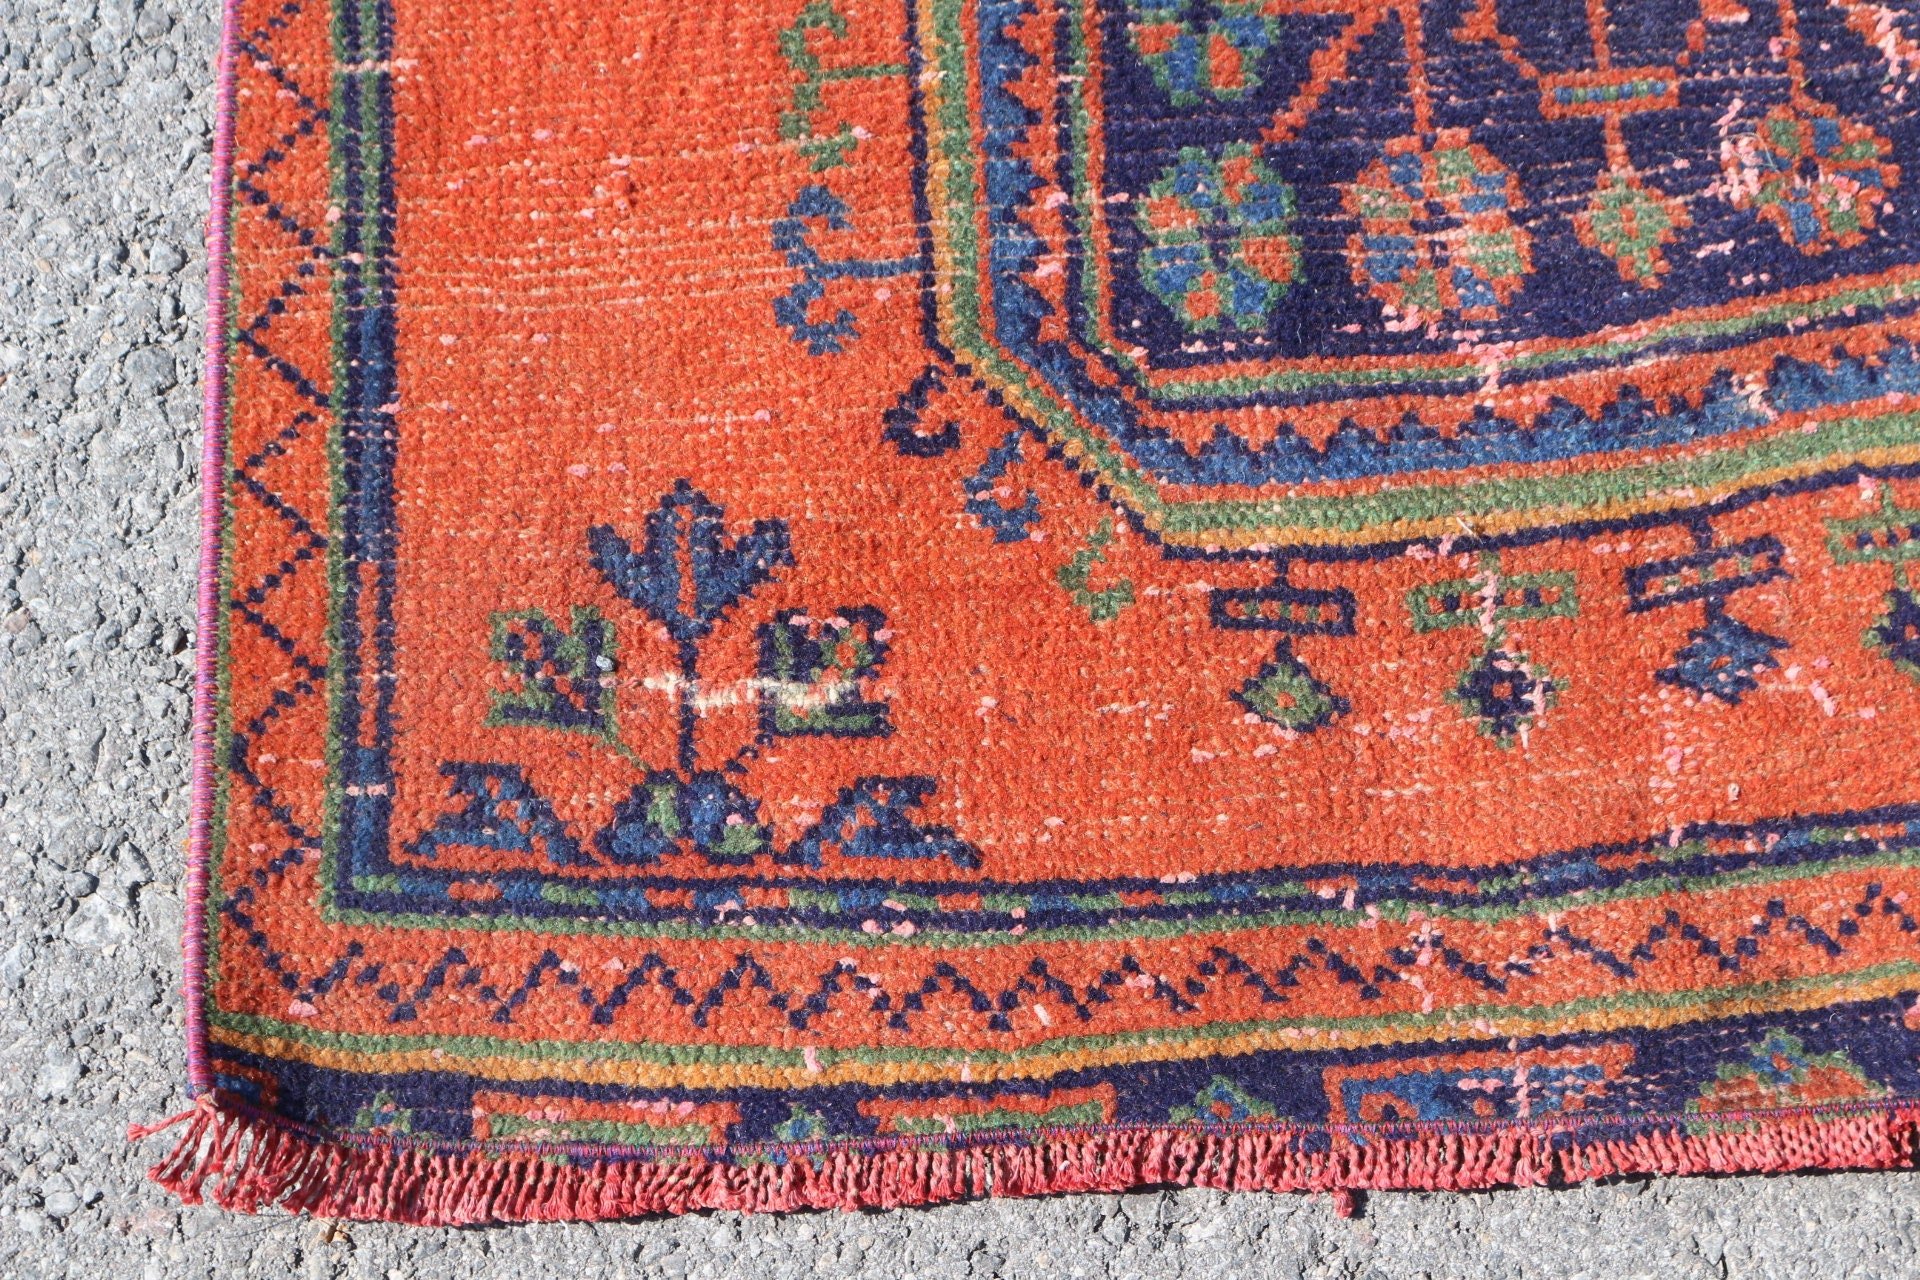 Orange Oushak Rugs, Custom Rug, Stair Rugs, 2.9x10.5 ft Runner Rugs, Antique Rugs, Vintage Rug, Rugs for Stair, Turkish Rugs